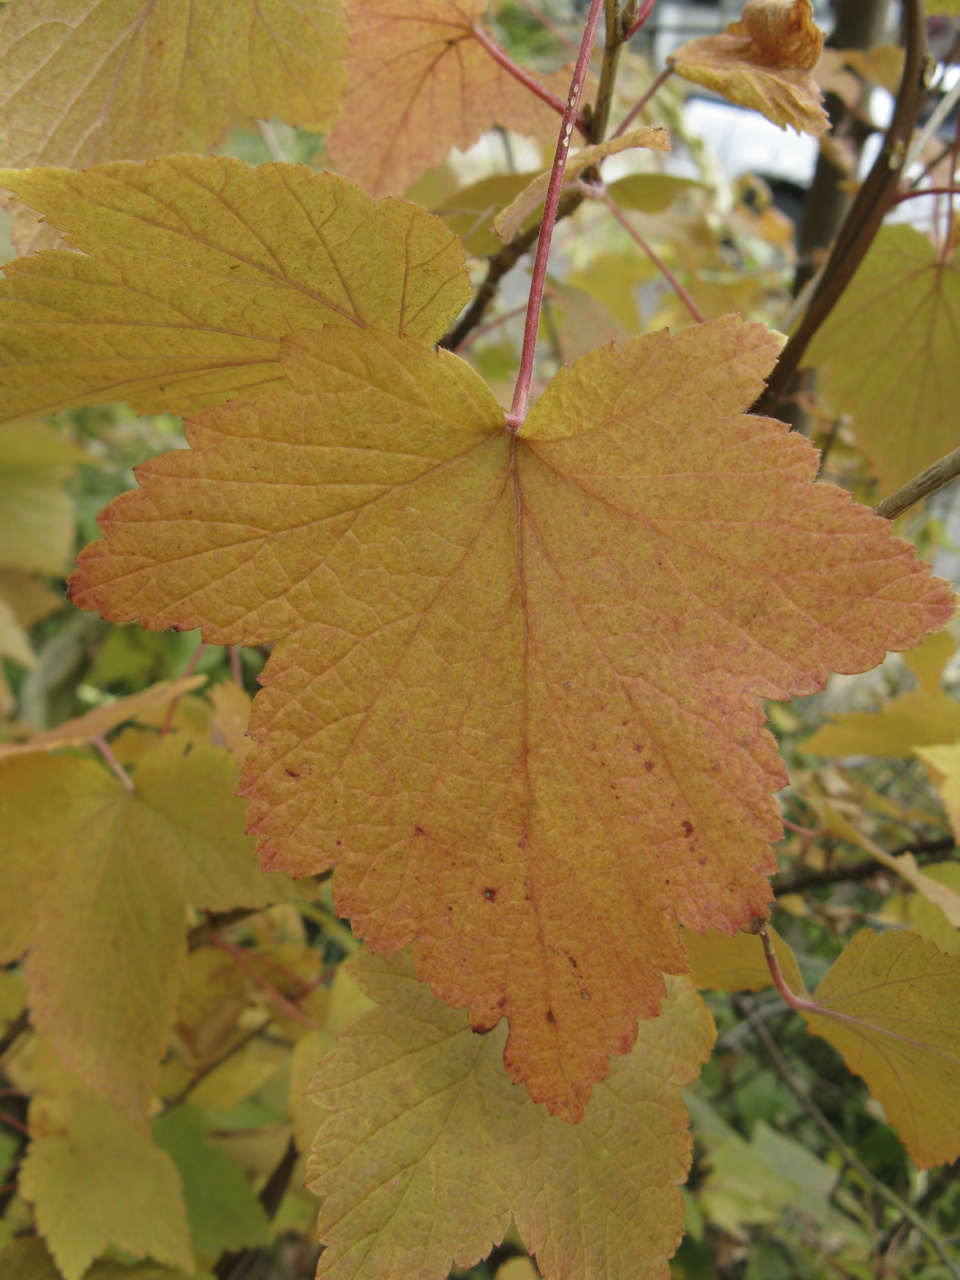 Ribes_americanum,_autumn_leaves_1.jpg